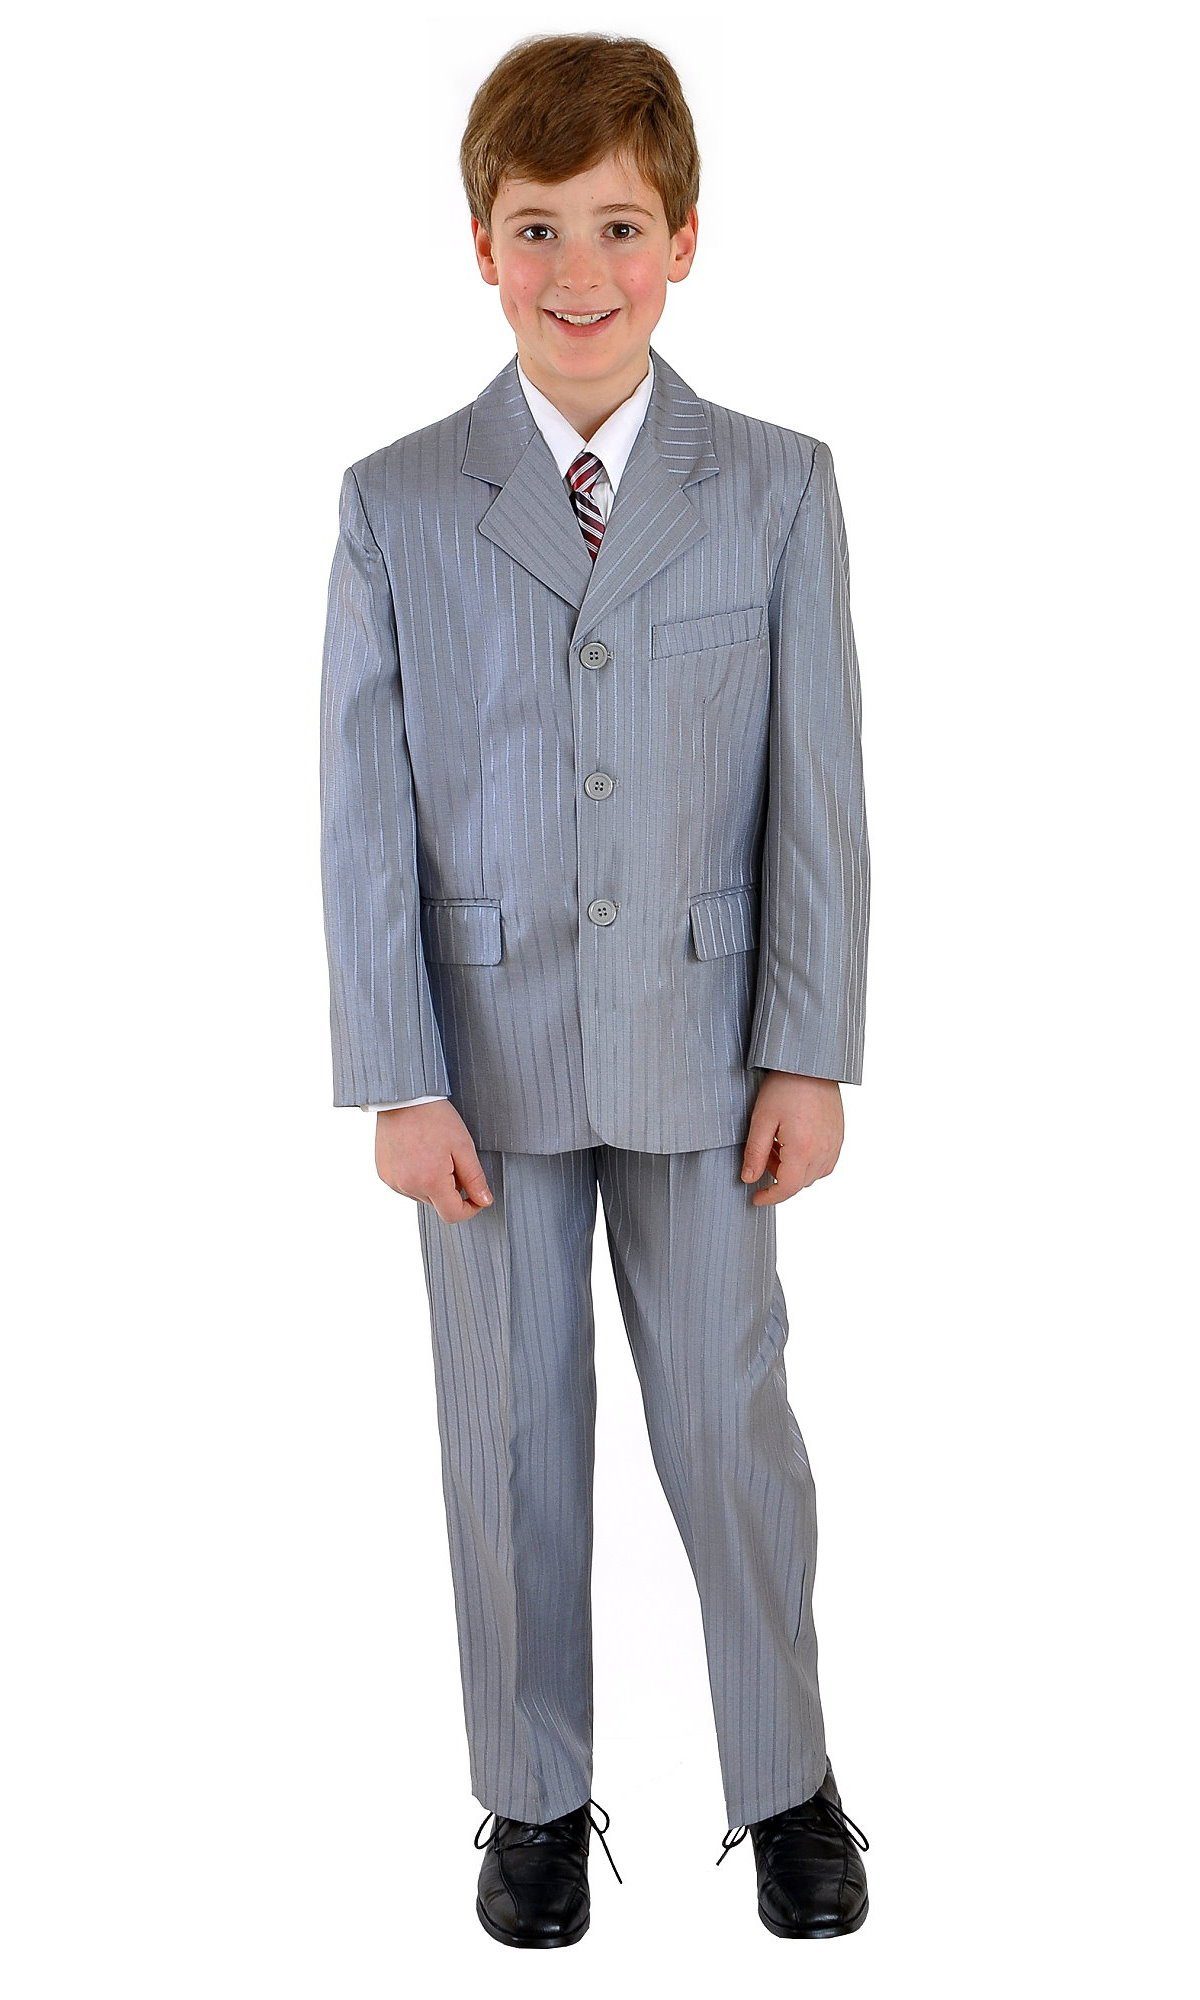 Family Trends Anzug Kombination Set 5 Teilig Sakko Hemd Krawatte Weste  Hose, 5-teilige Anzug-Kombination für Jungen von family-trends